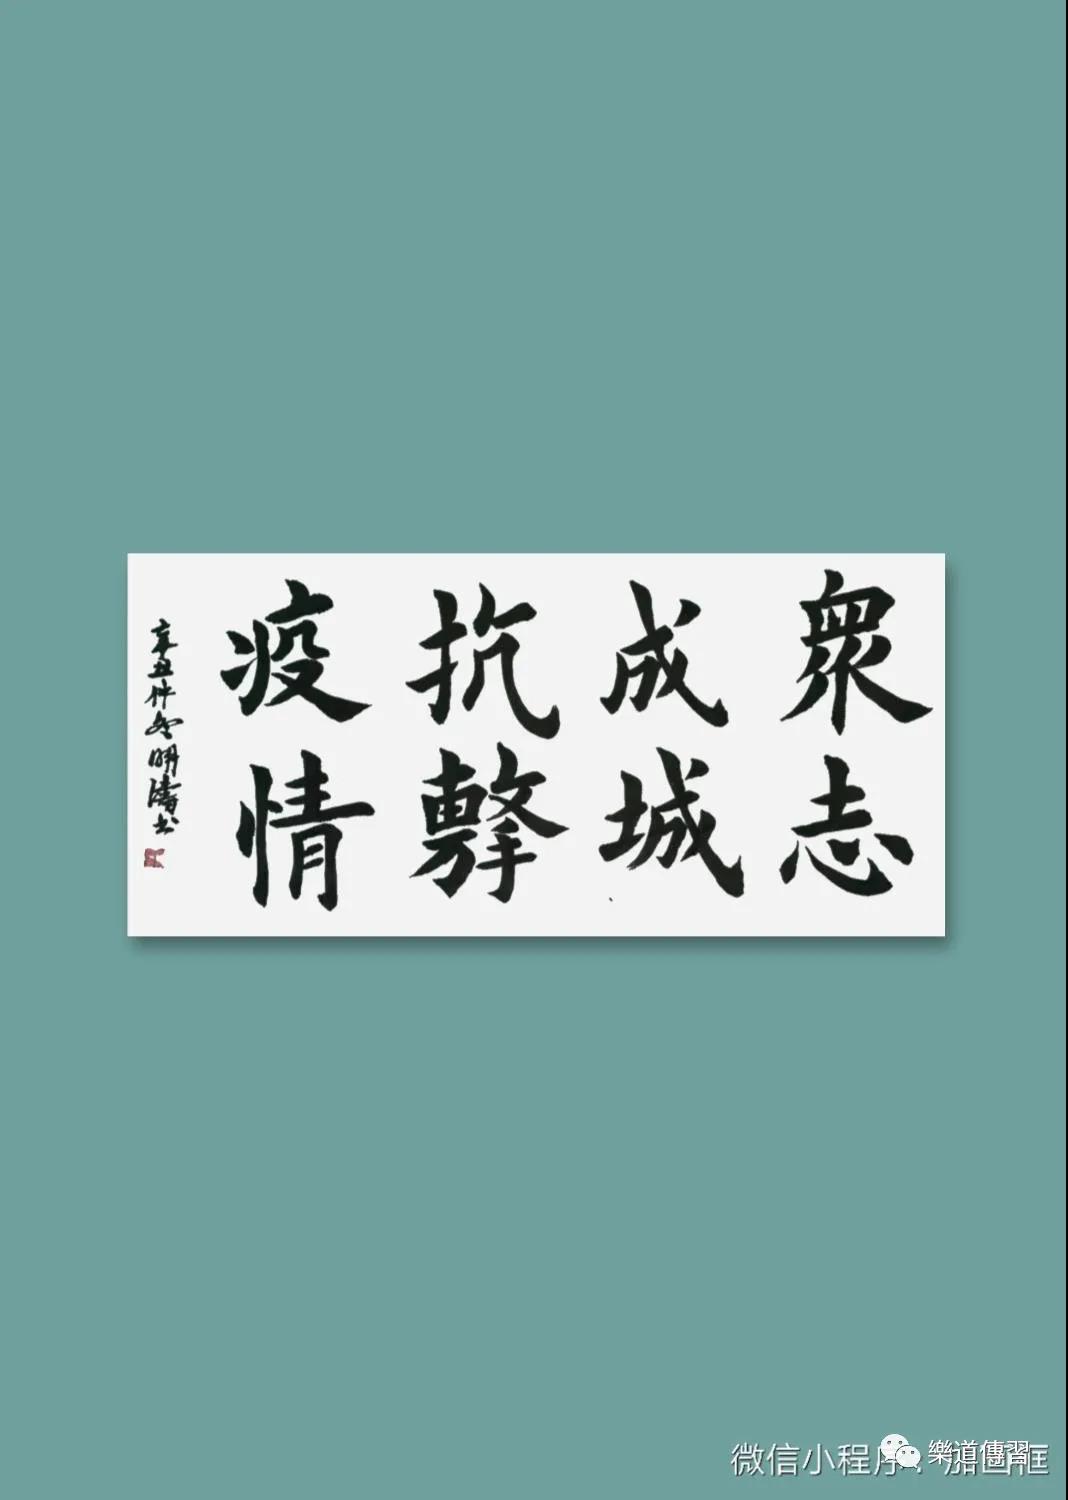 【“艺”起抗疫】淳化县老年大学书法作品网络展